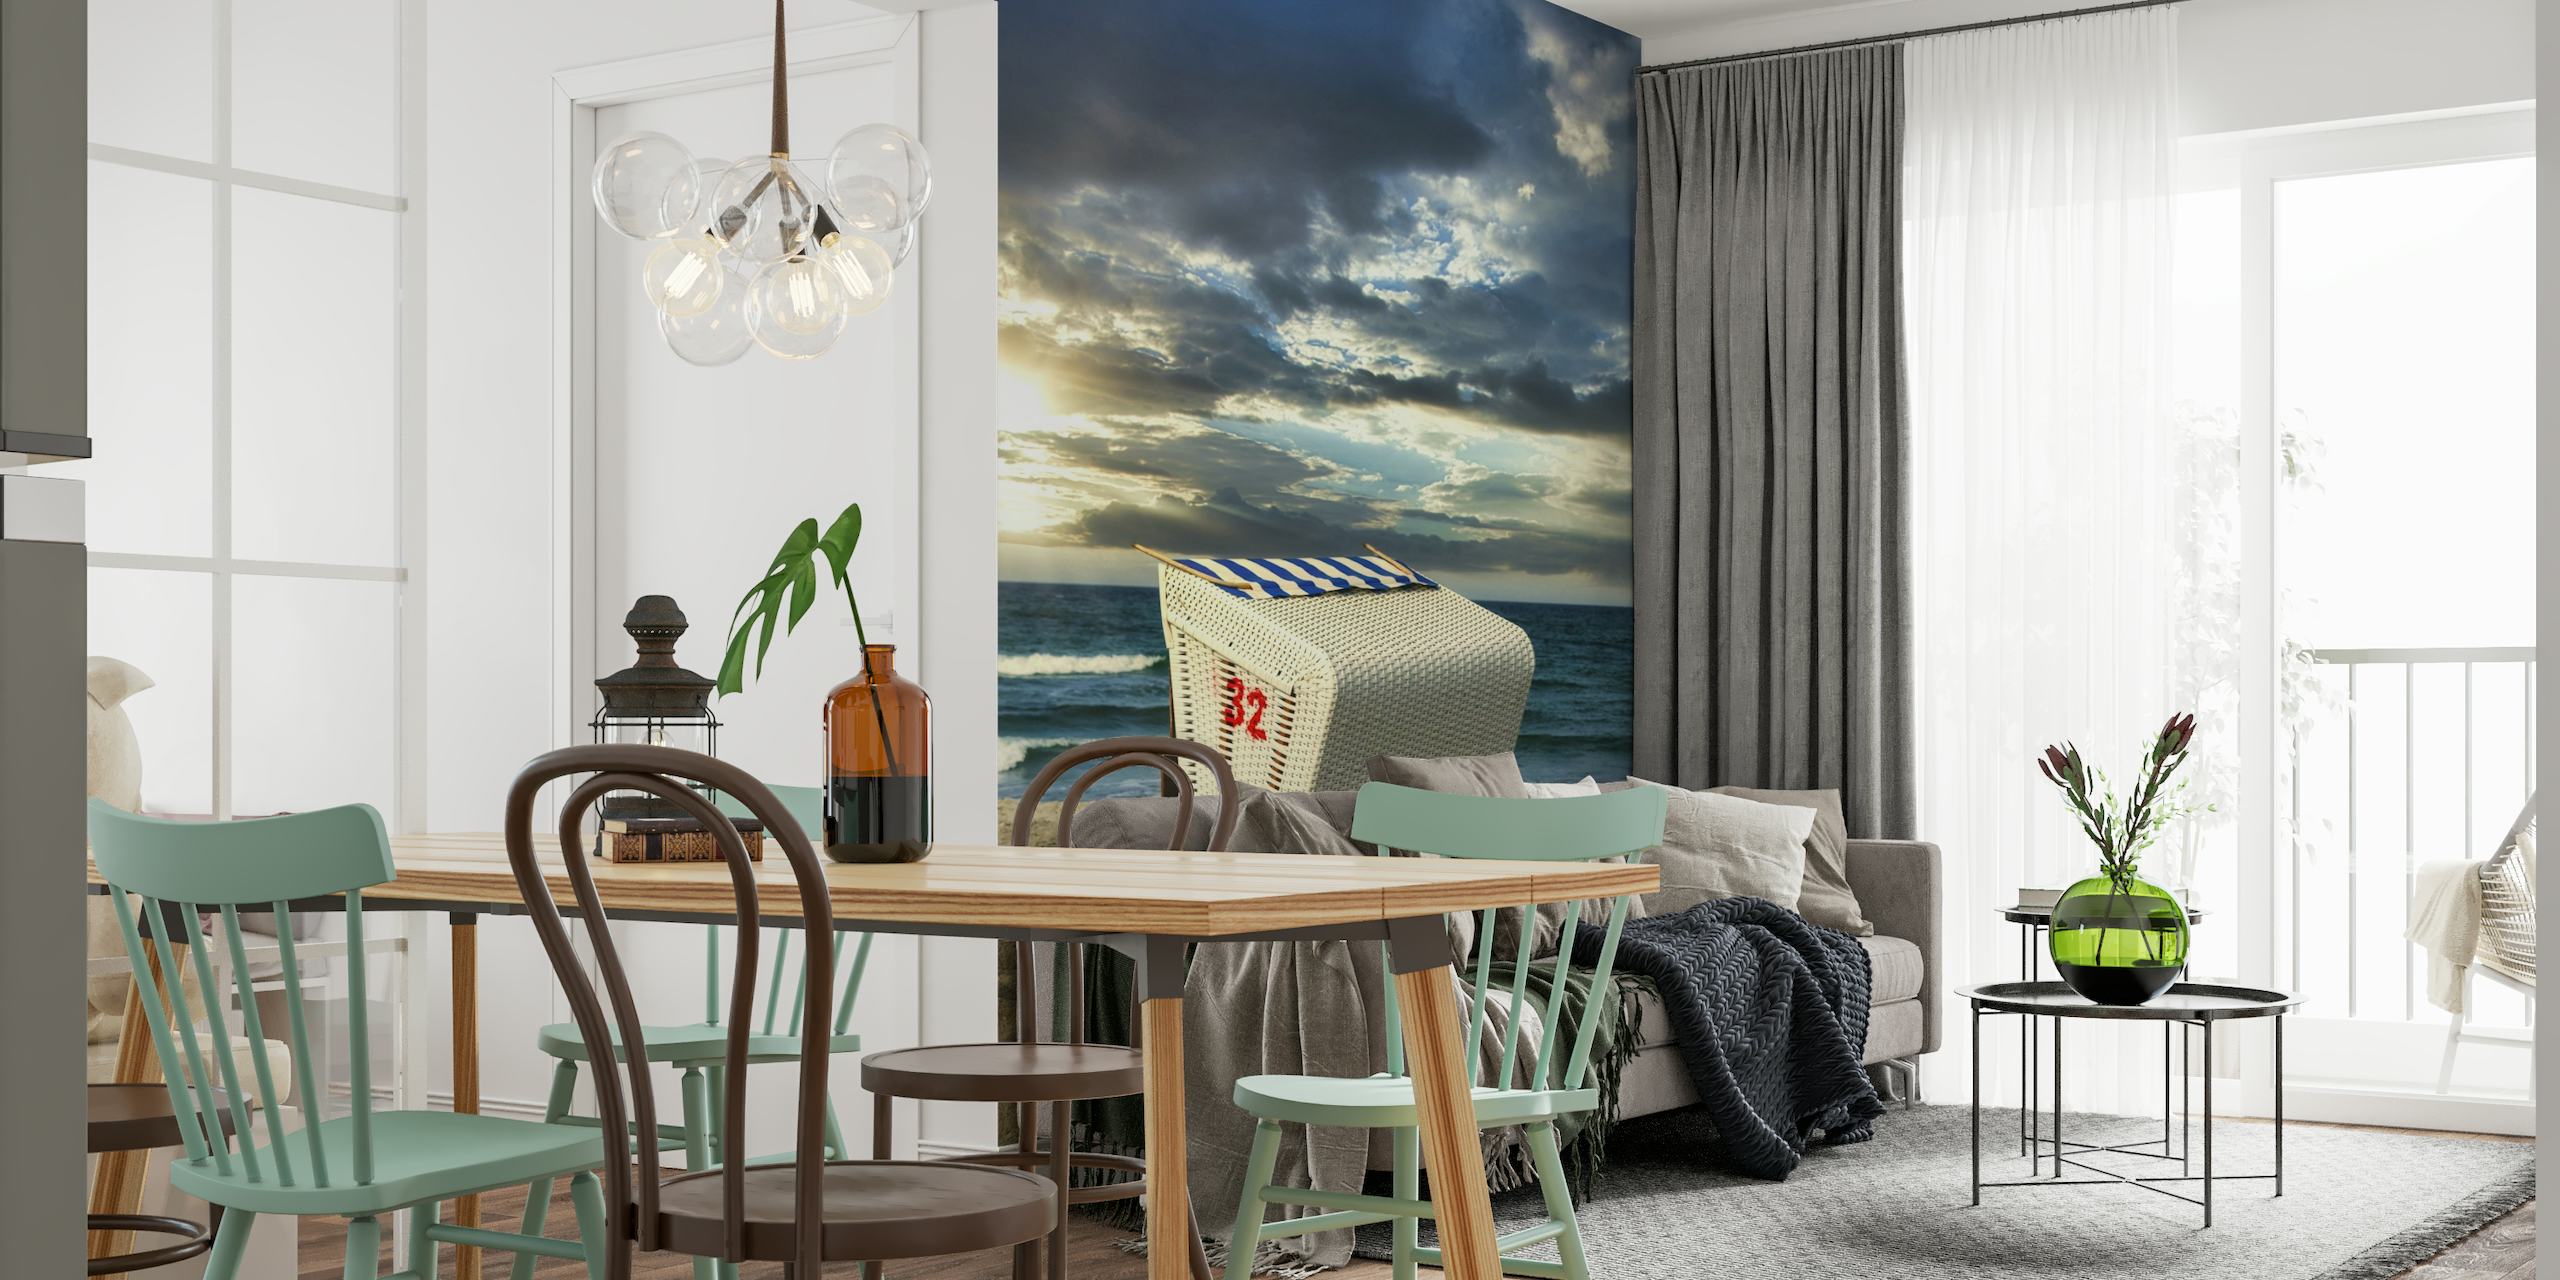 Baltic Sea Beach Chair papel pintado